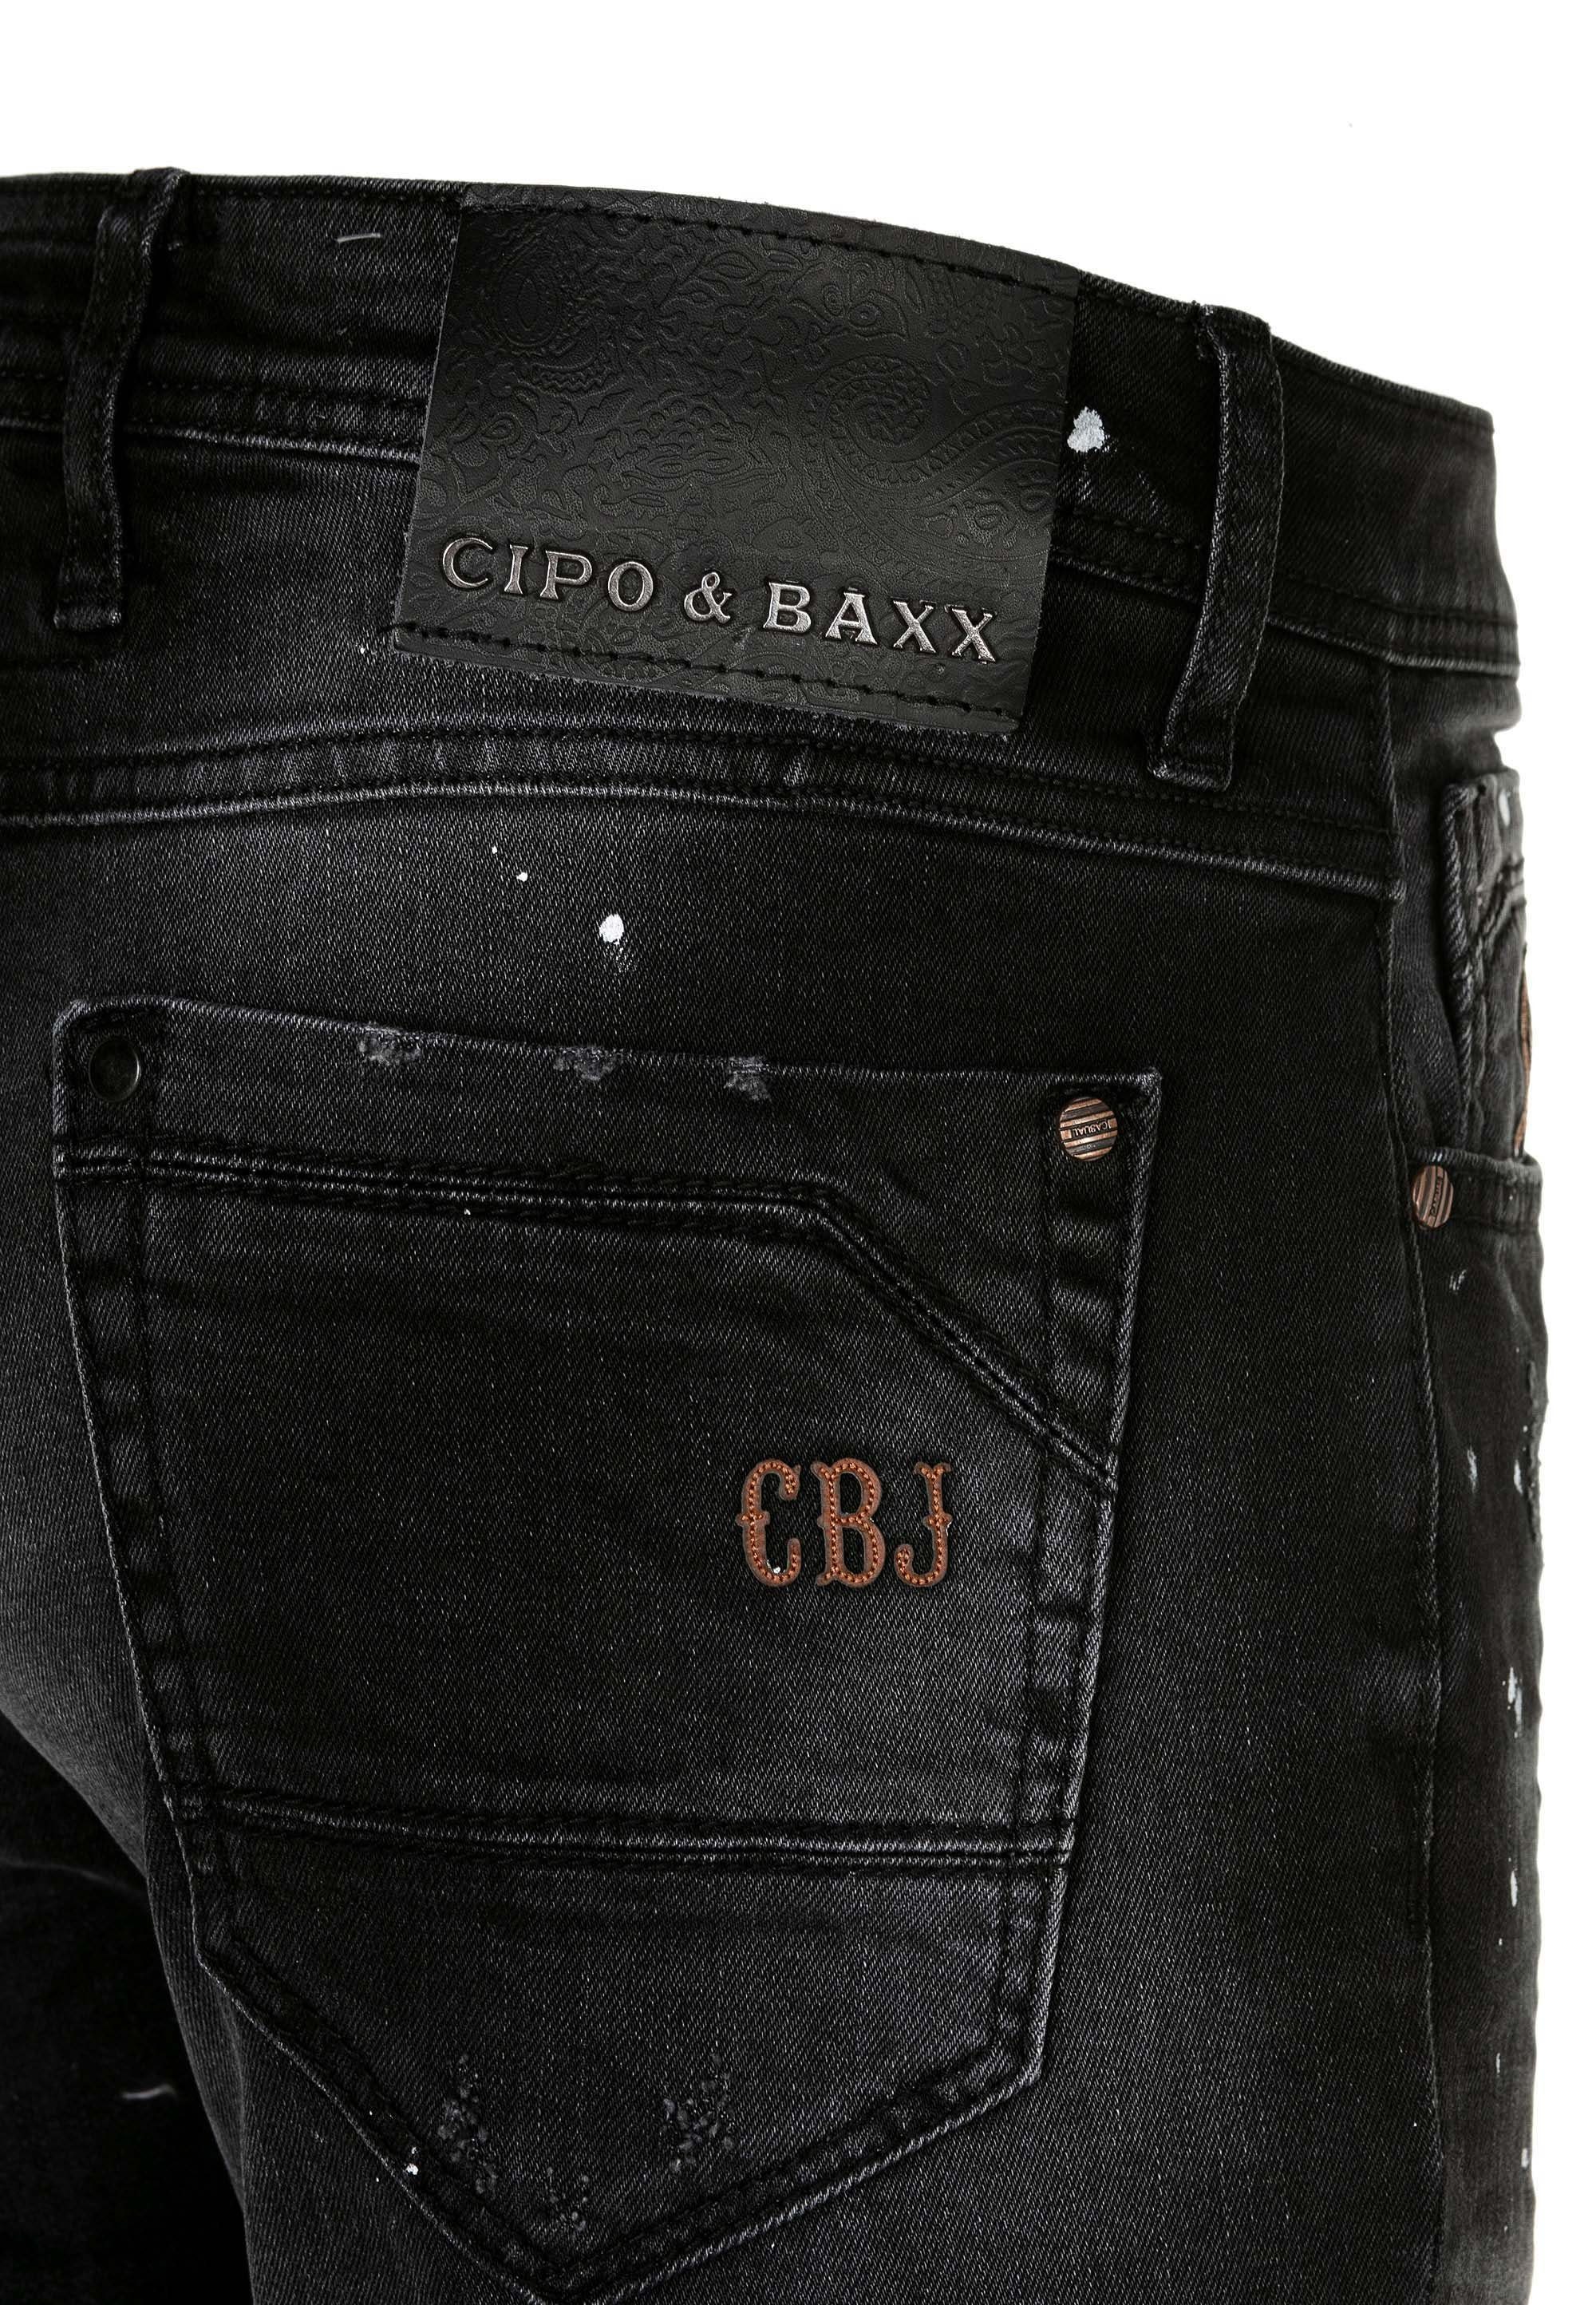 Jeans Destroyed-Effekten mit Baxx Cipo Bequeme &